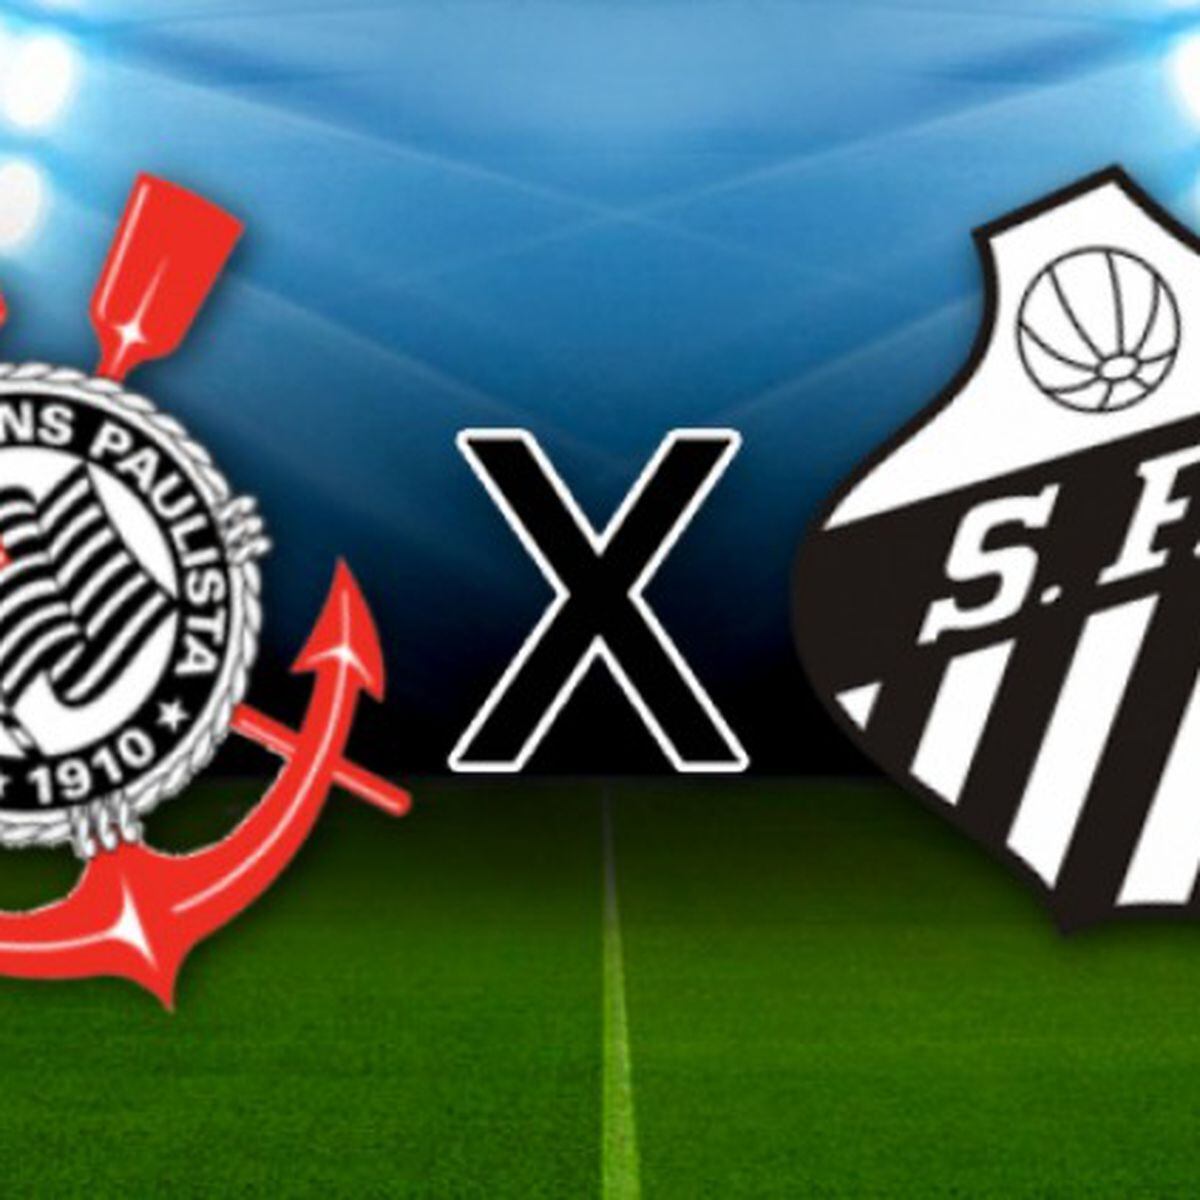 Corinthians x Santos - AO VIVO - 29/10/2023 - Campeonato Brasileiro 